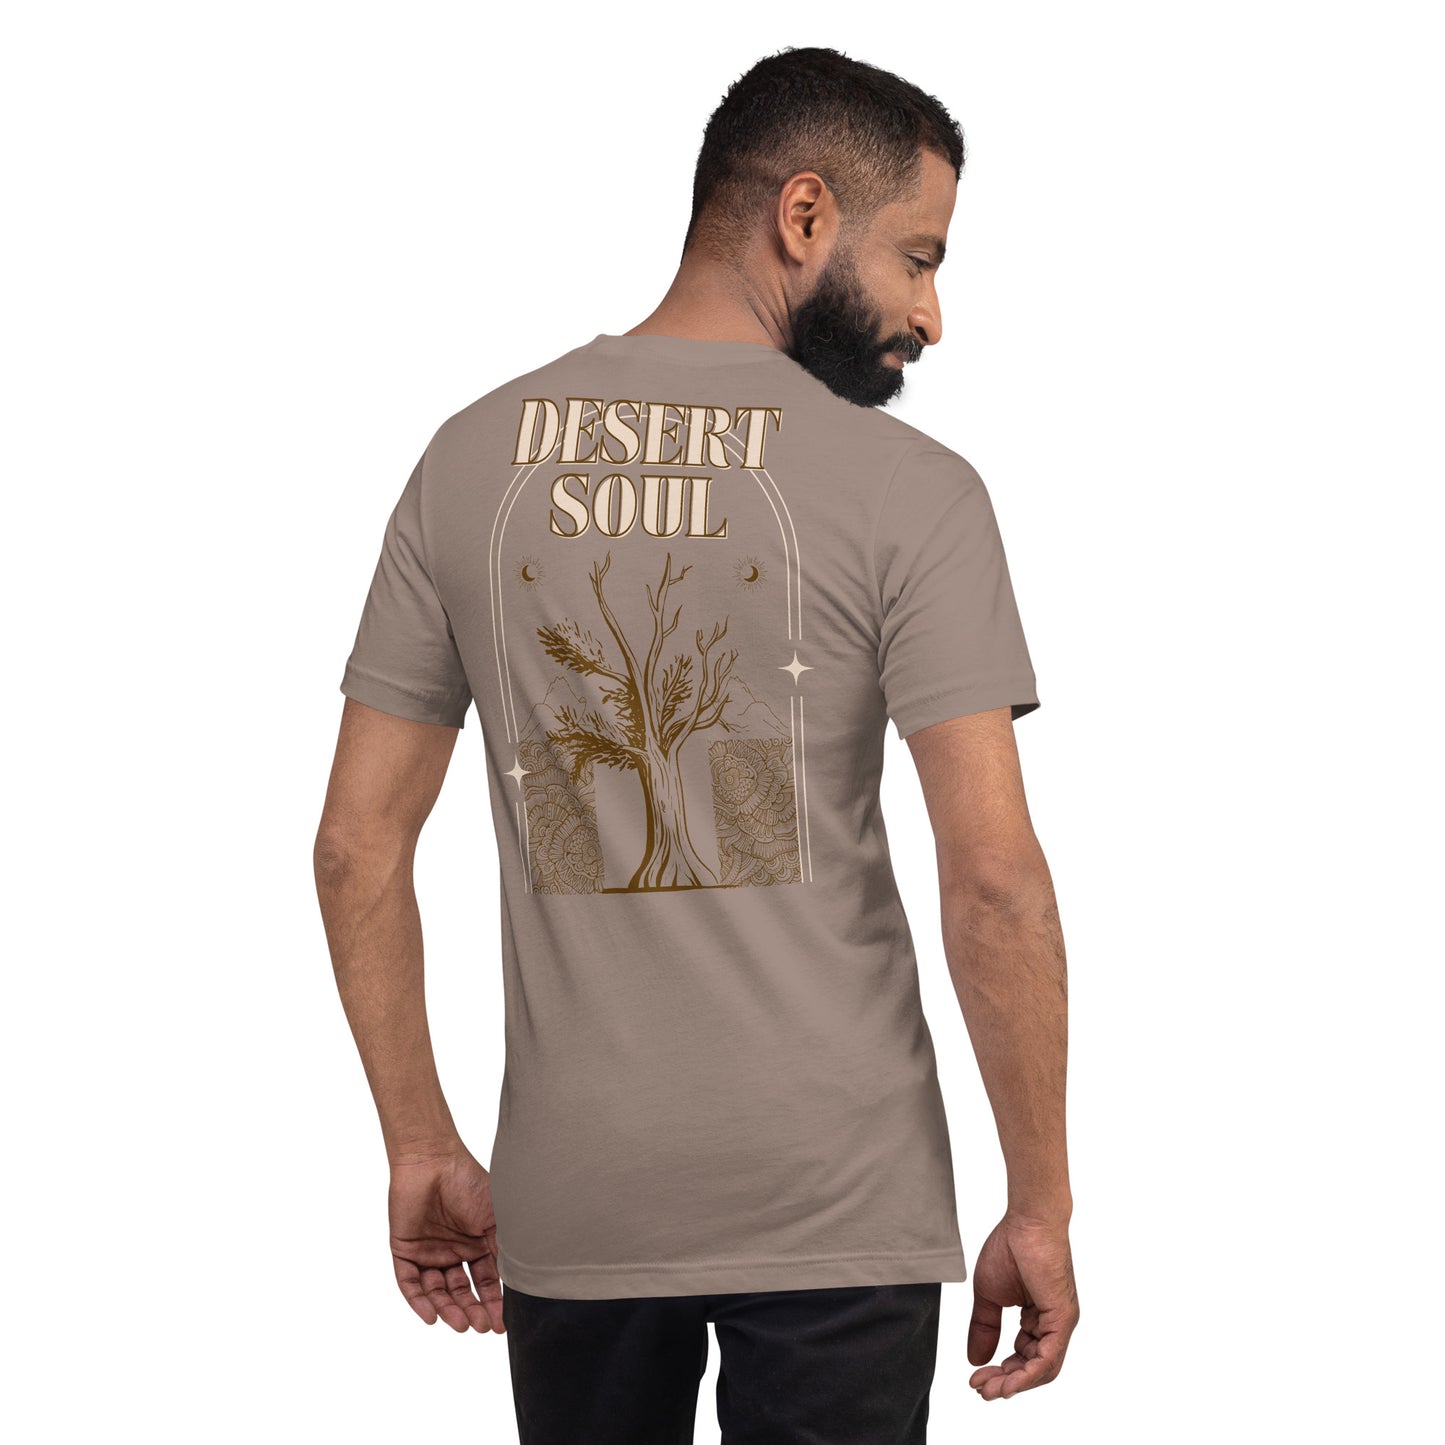 DESERT SOUL Unisex T-Shirt in Pebble - Back Graphic